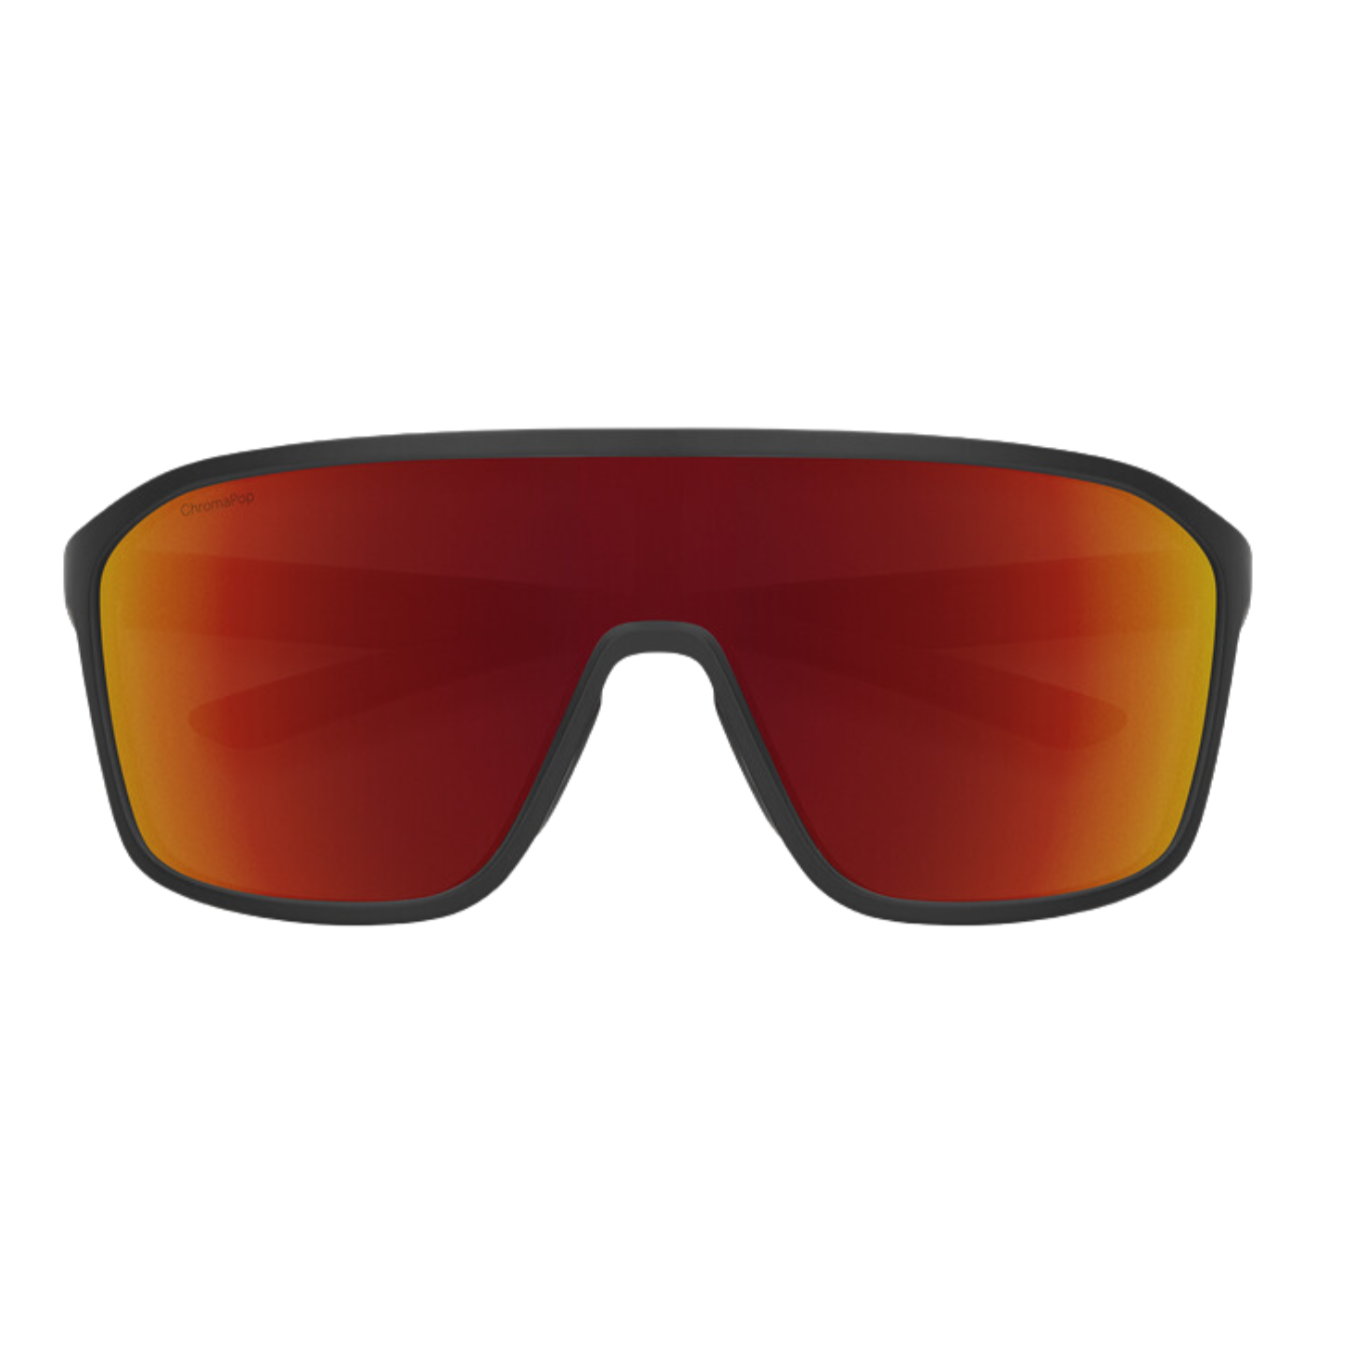 Boomtown Sunglasses - S24